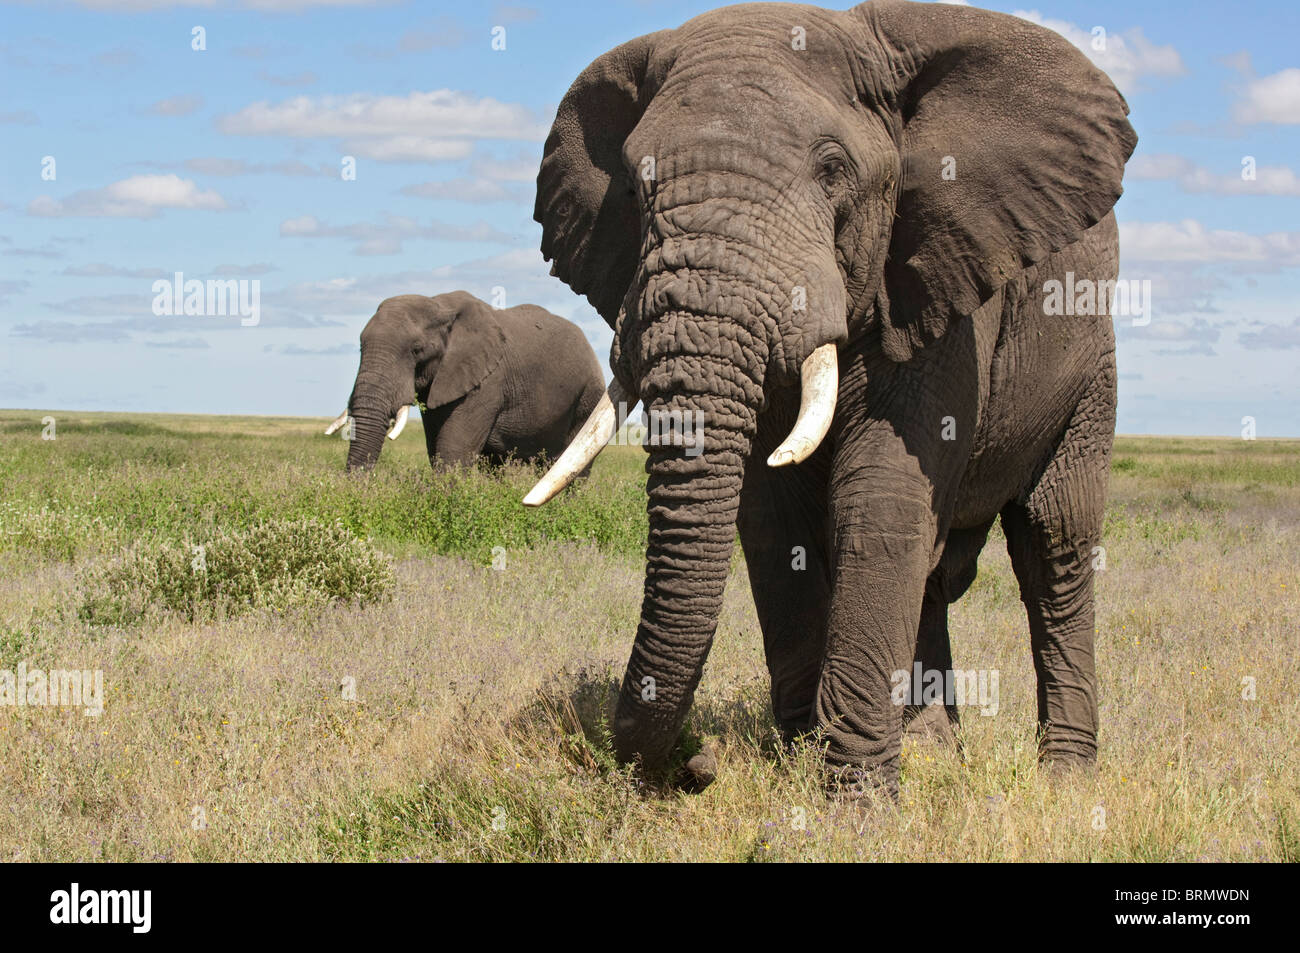 Un Elefante con su trompa en el suelo detrás y el otro pie en el fondo Foto de stock